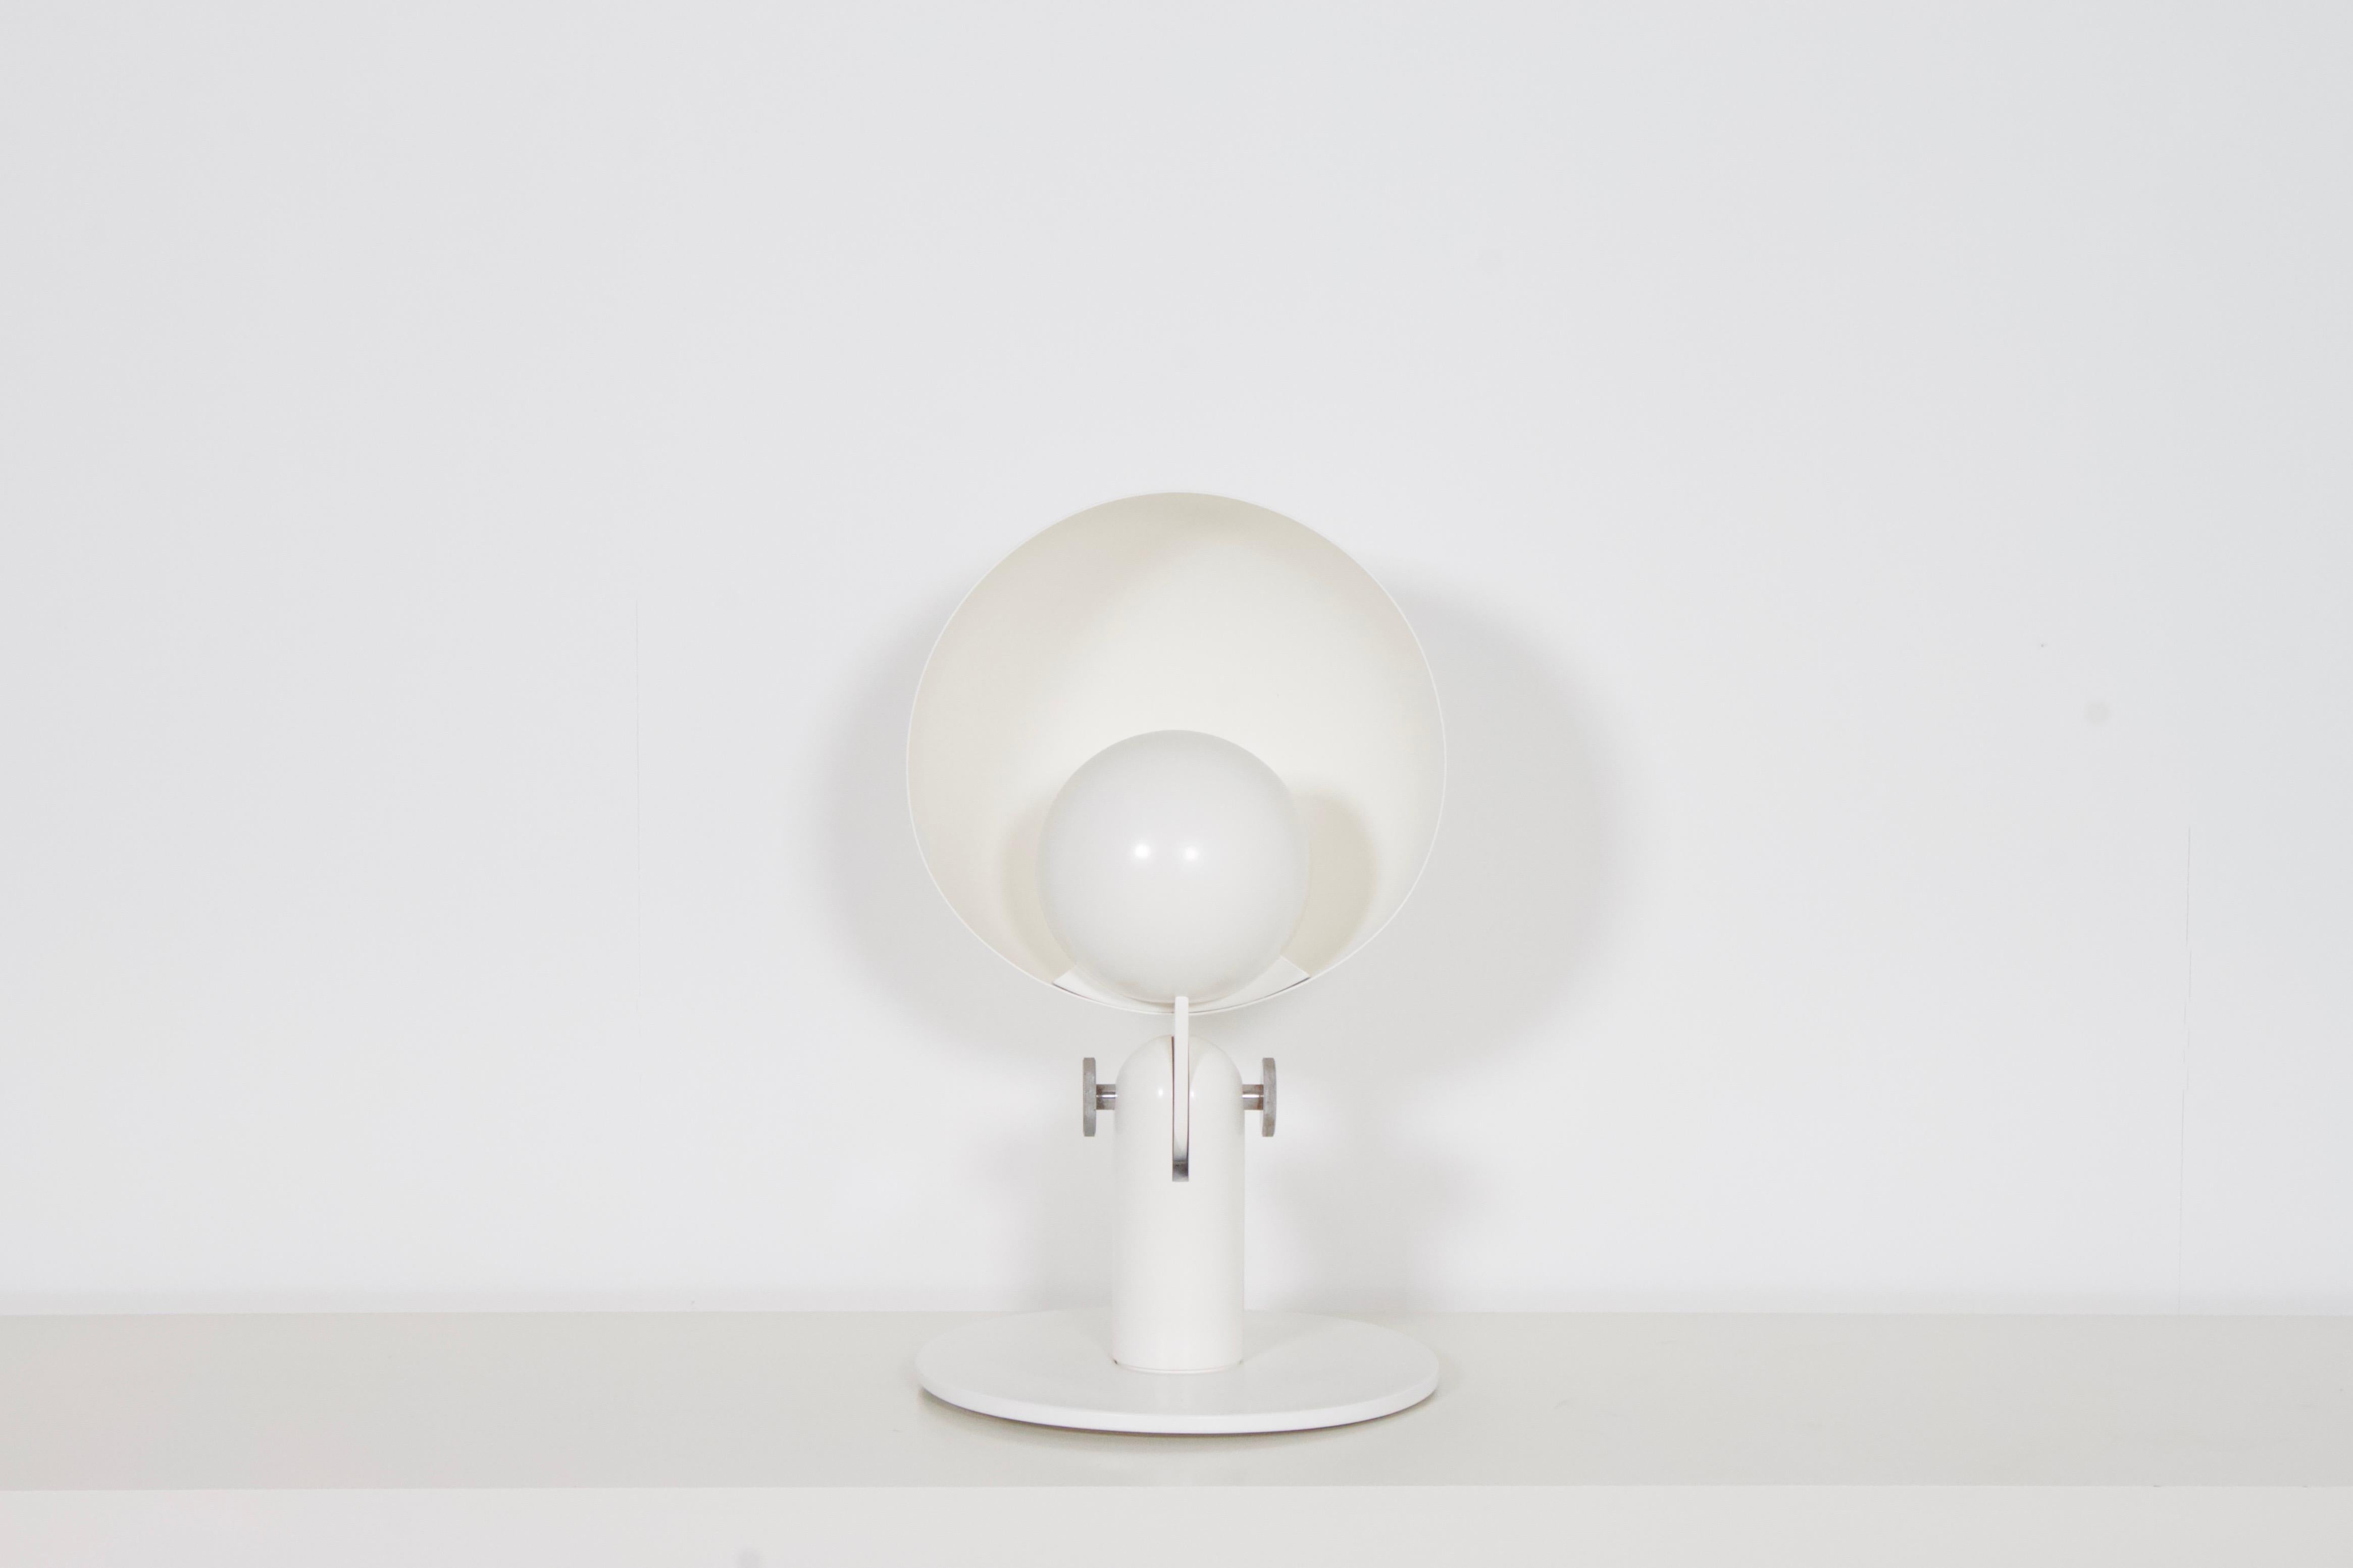 Beeindruckende italienische Bieffeplast 'Cuffia' Tischlampe in sehr gutem Zustand.

Entworfen von Francesco Buzzi im Jahr 1969

Die Leuchte besteht aus einem halbkugelförmigen Aluminiumreflektor mit einem Durchmesser von 40 cm und einem Schirm mit